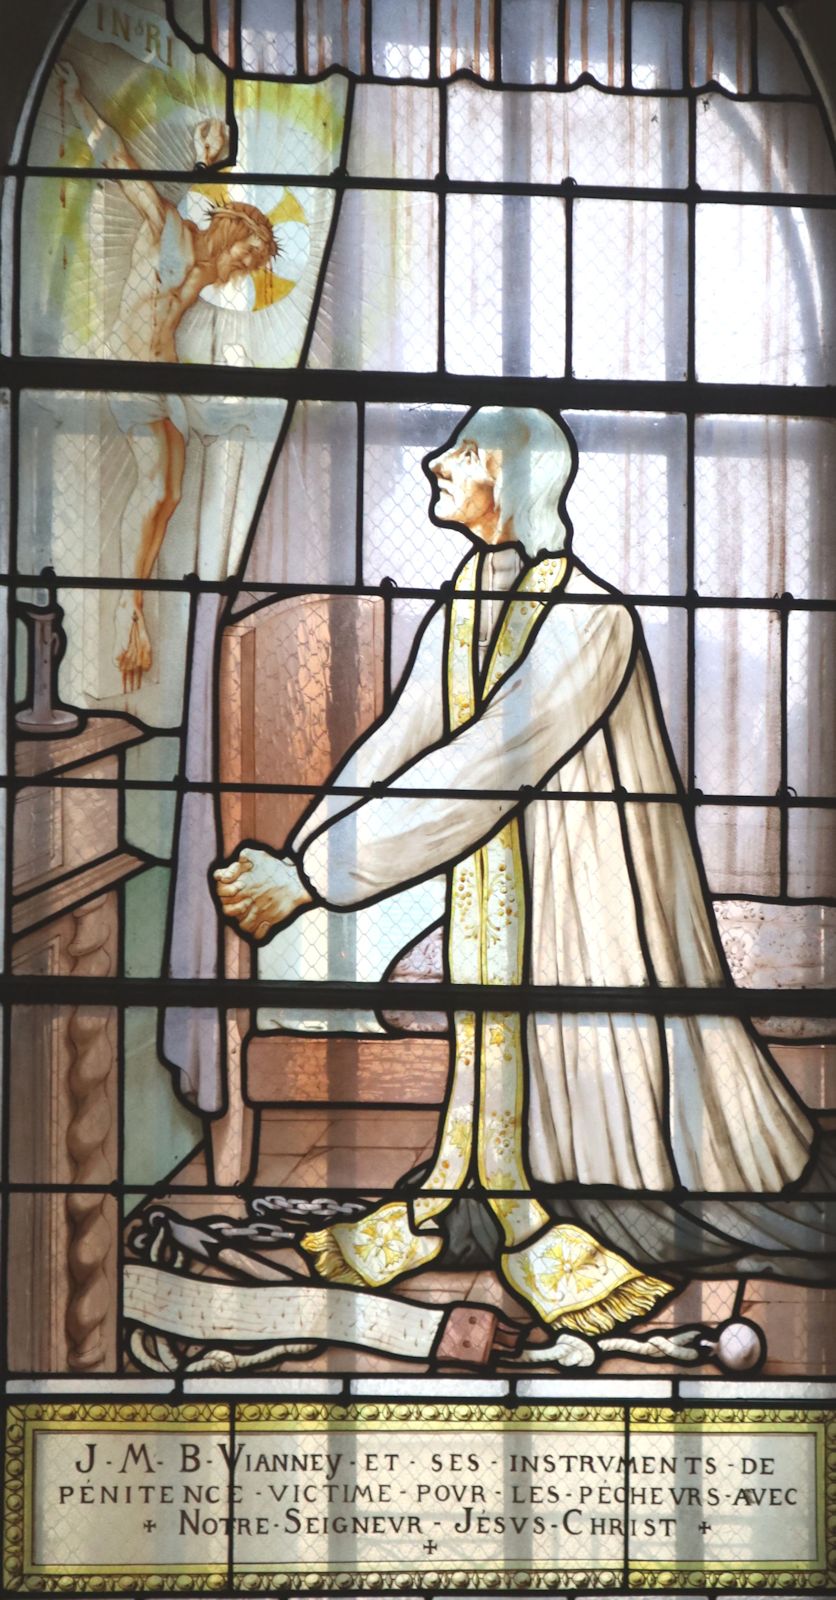 Glasfenster in der Basilika in Ars-sur-Formans, deren Chor dann zum großen Sanktuarium für Johannes-Baptist erweitert wurde